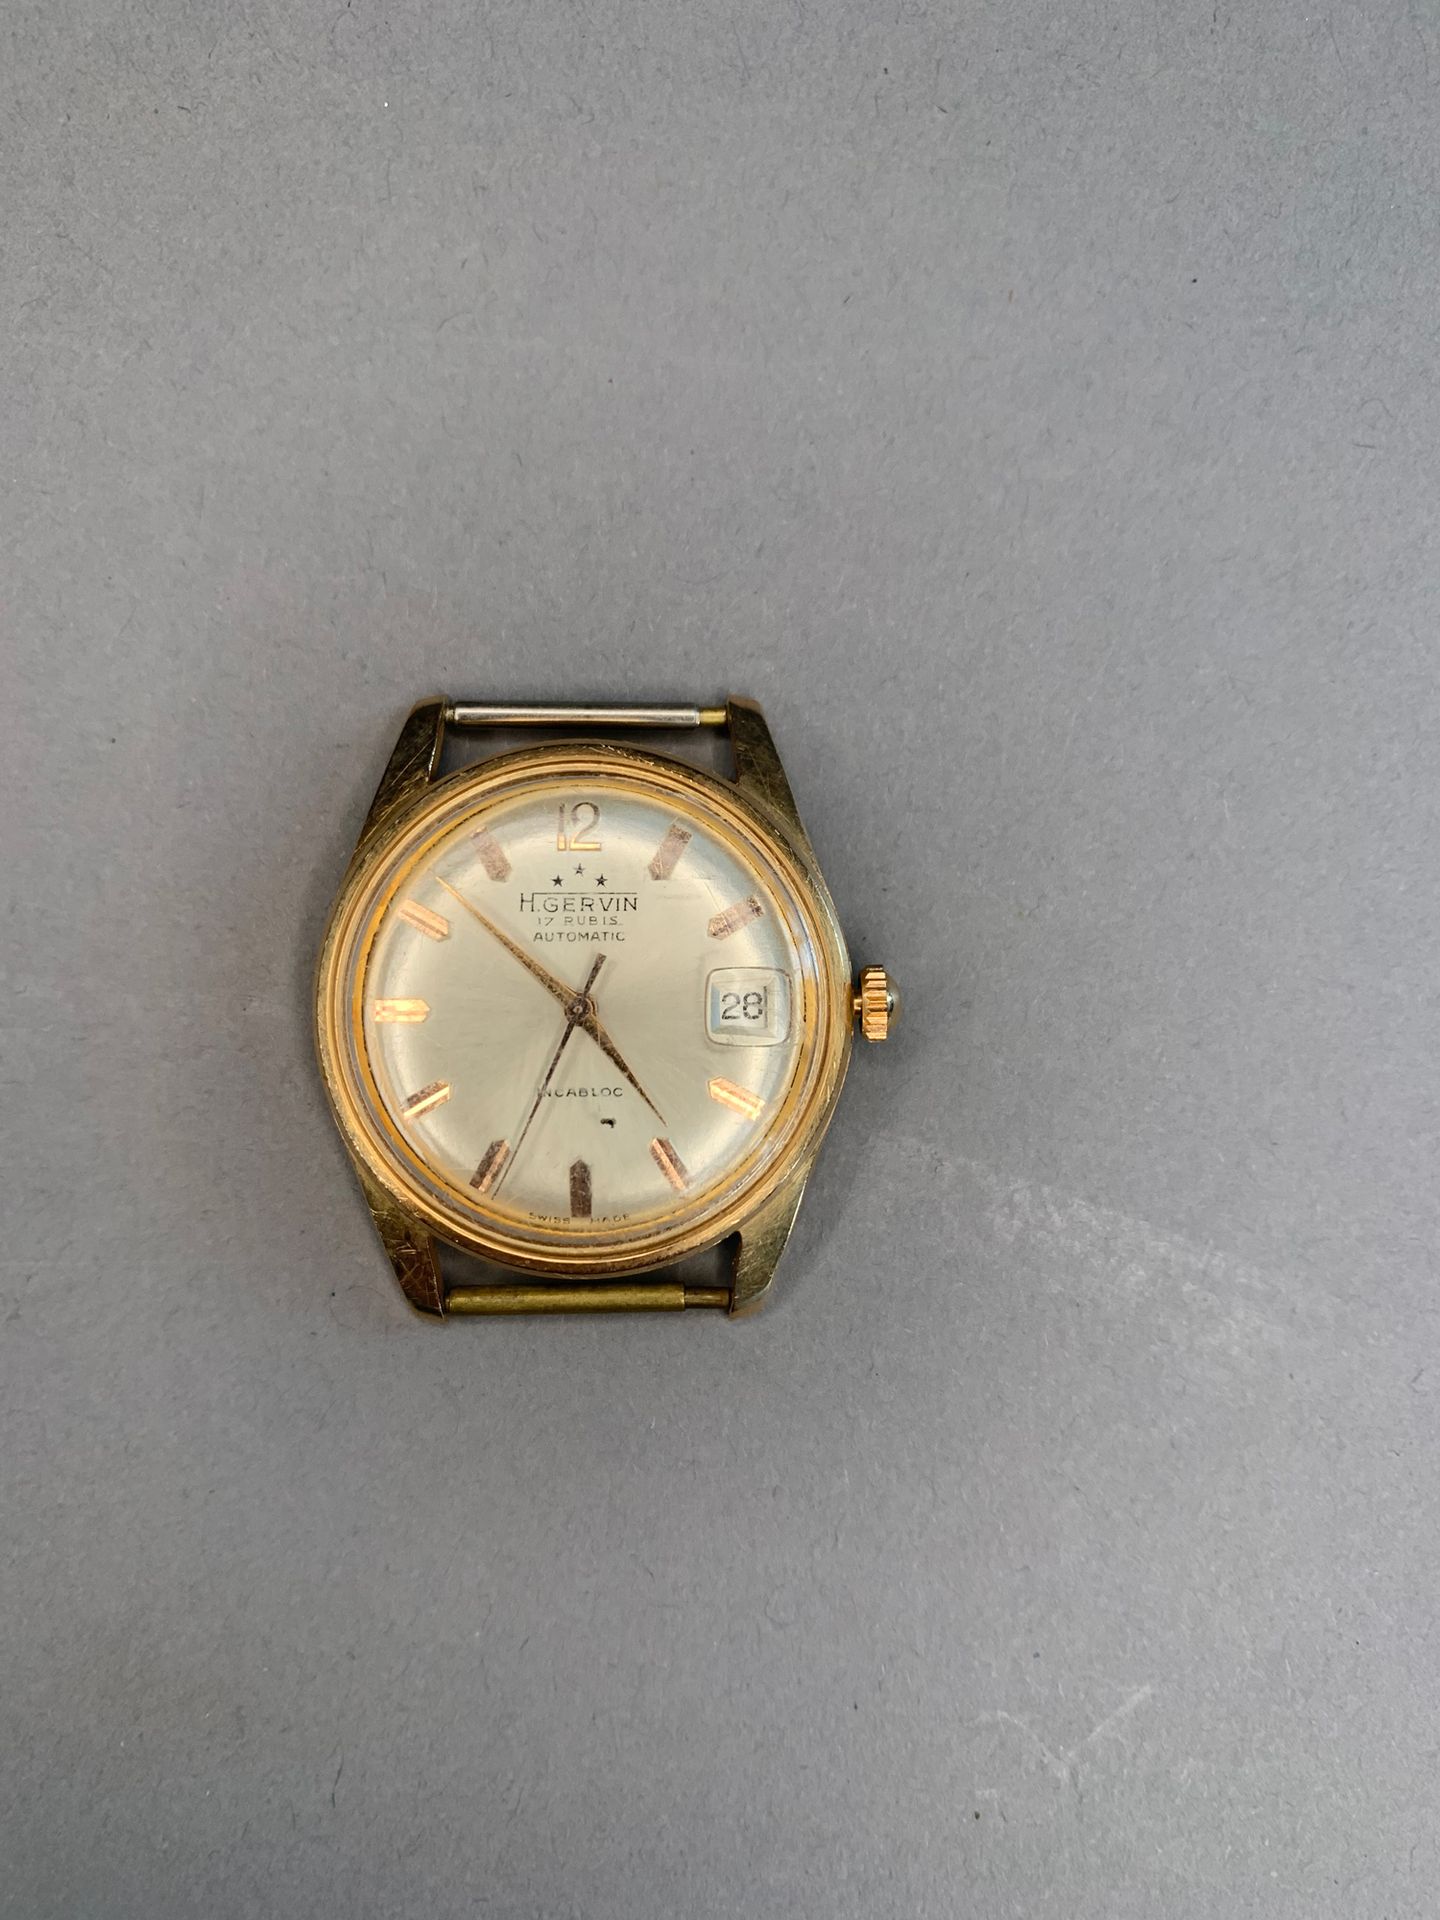 H. GERVIN Watch case in 18 K yellow gold.
Round case, cream dial, applied index,&hellip;